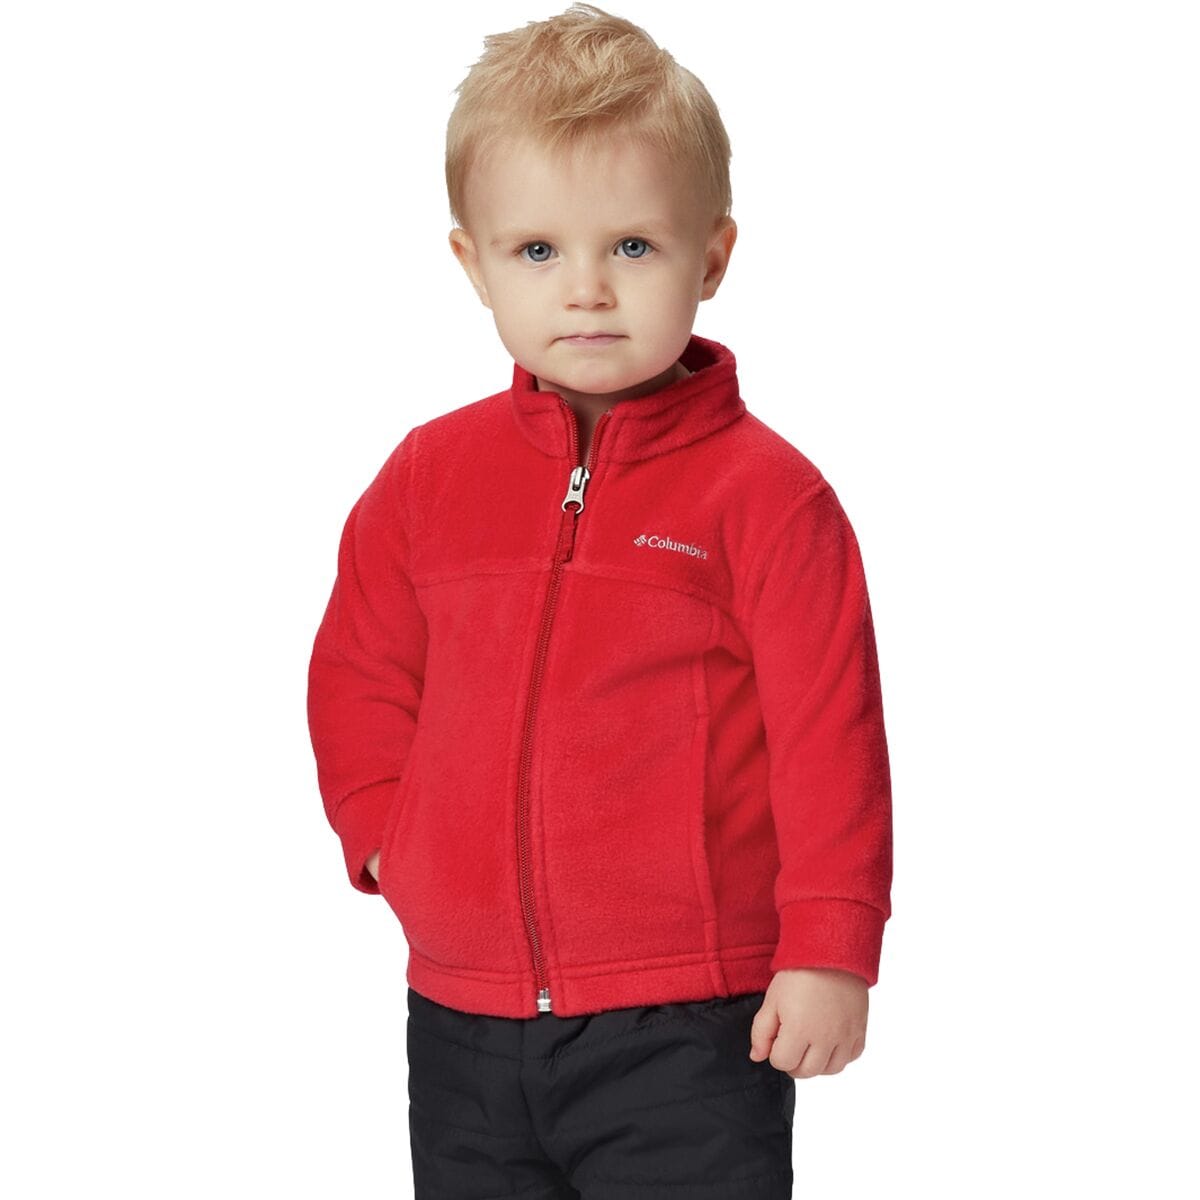 Steens II Mountain Fleece Jacket - Infant Boys